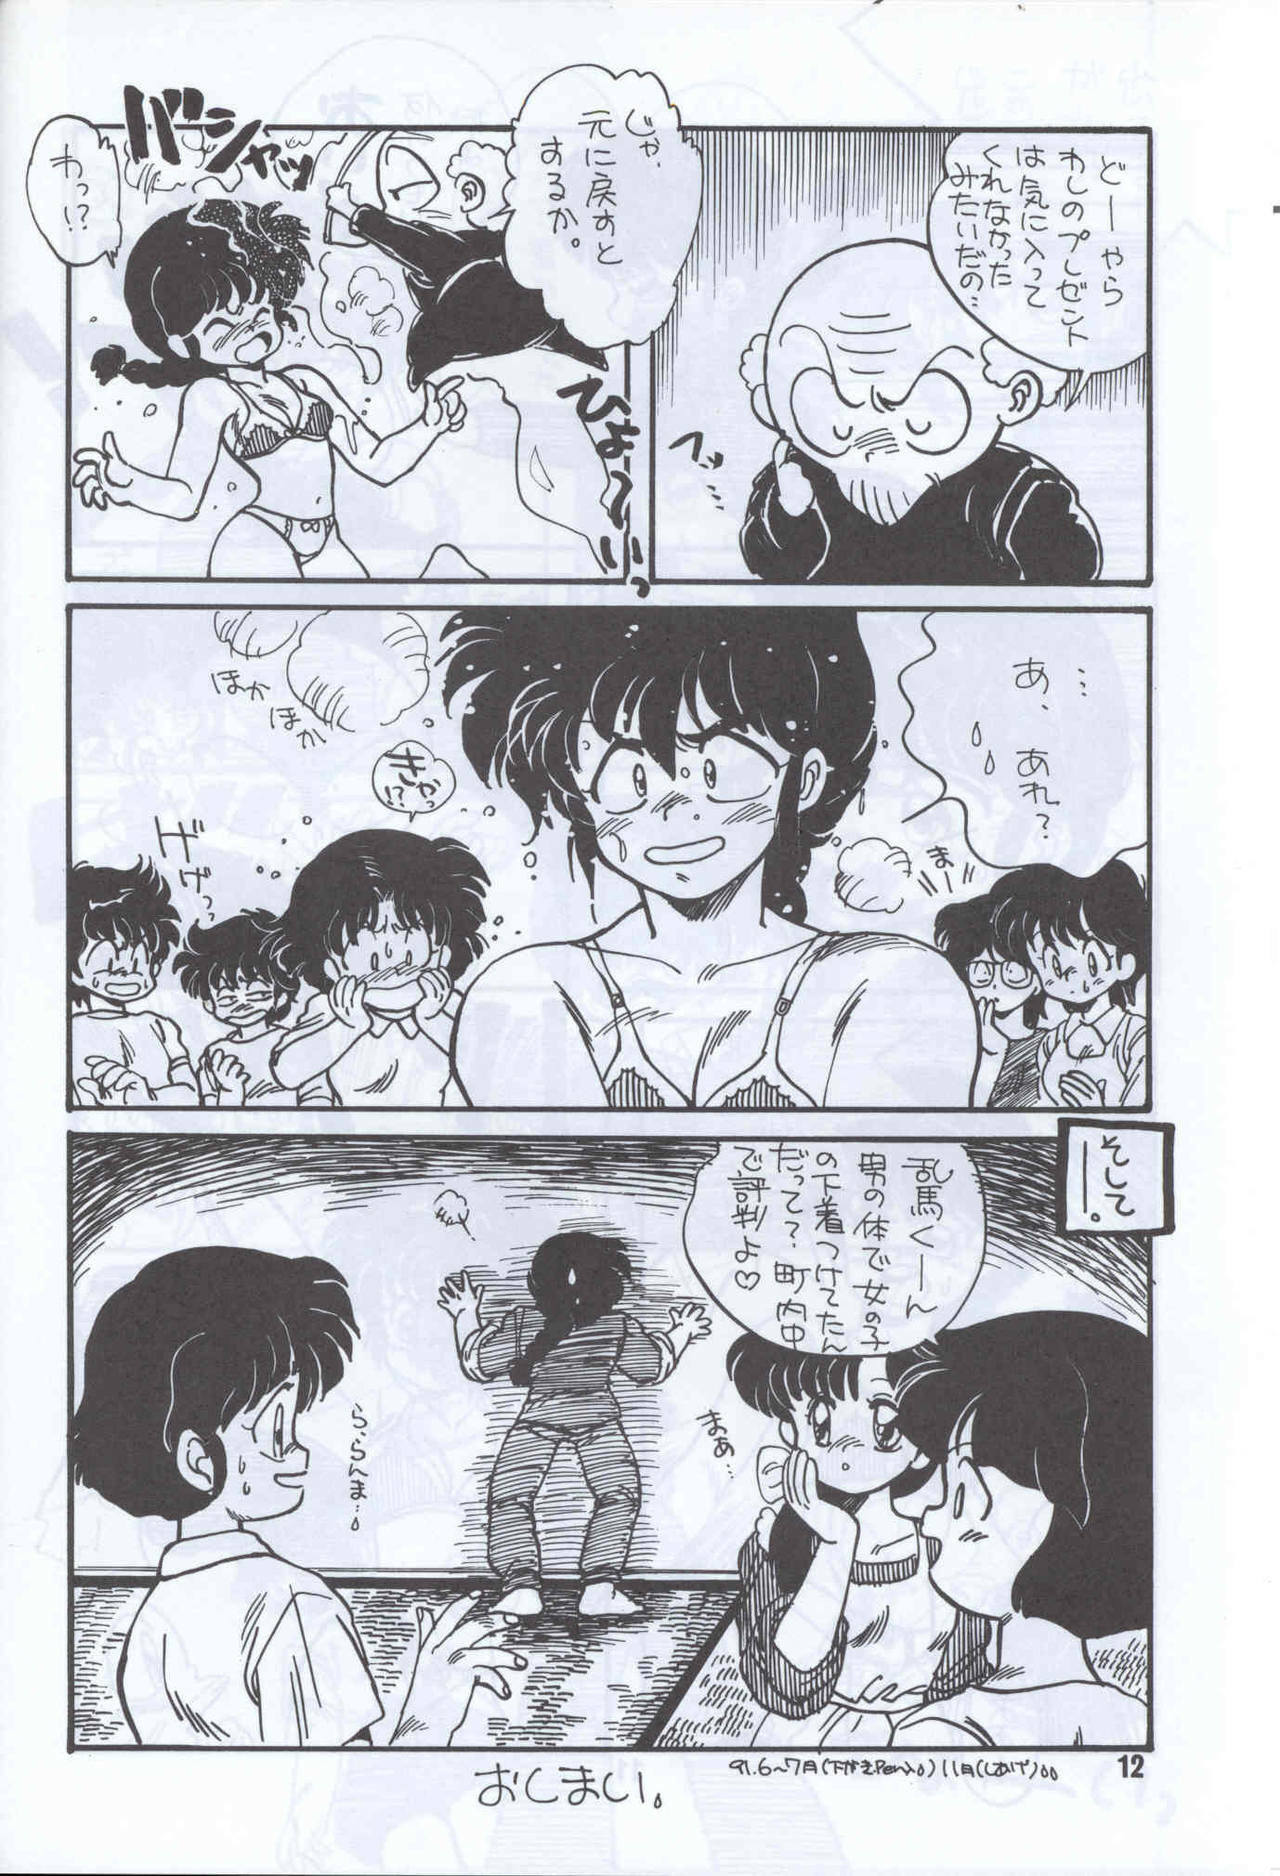 Ranma 1H (Ranma 1/2) page 9 full